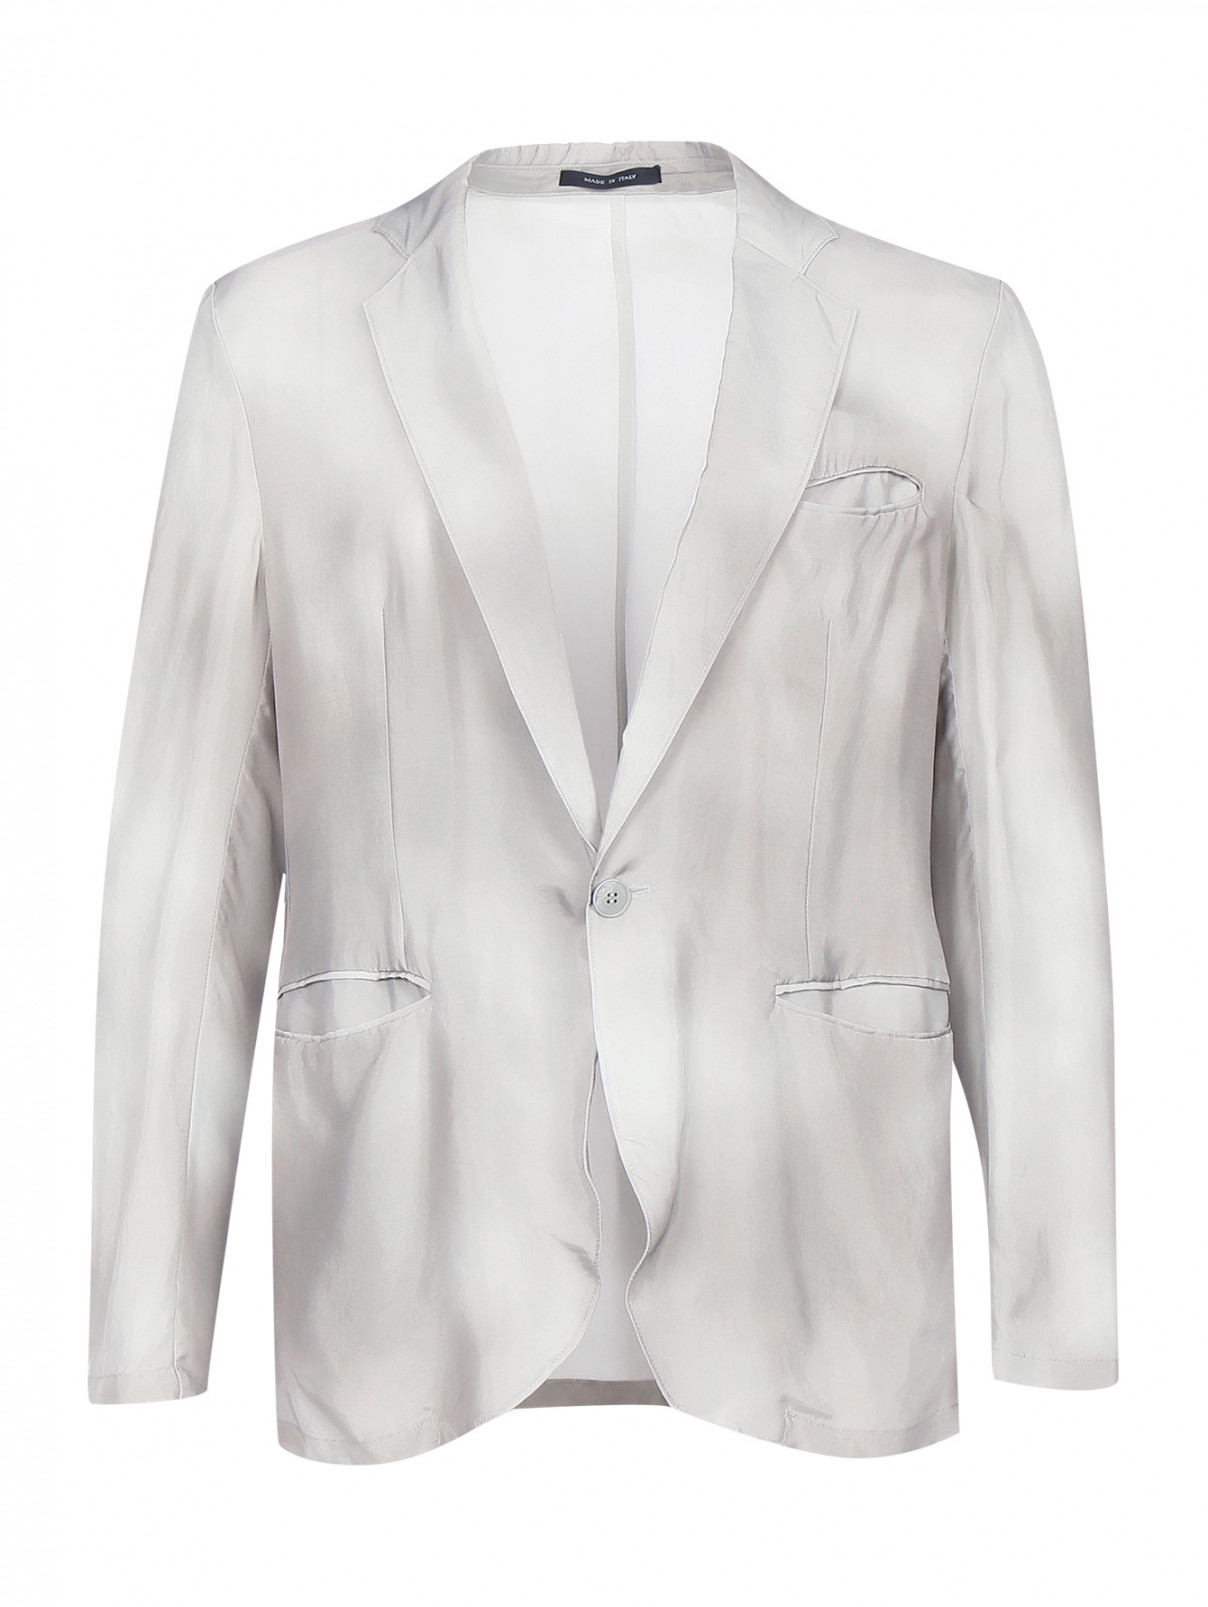 Однобортный пиджак с боковыми карманами Emporio Armani  –  Общий вид  – Цвет:  Серый